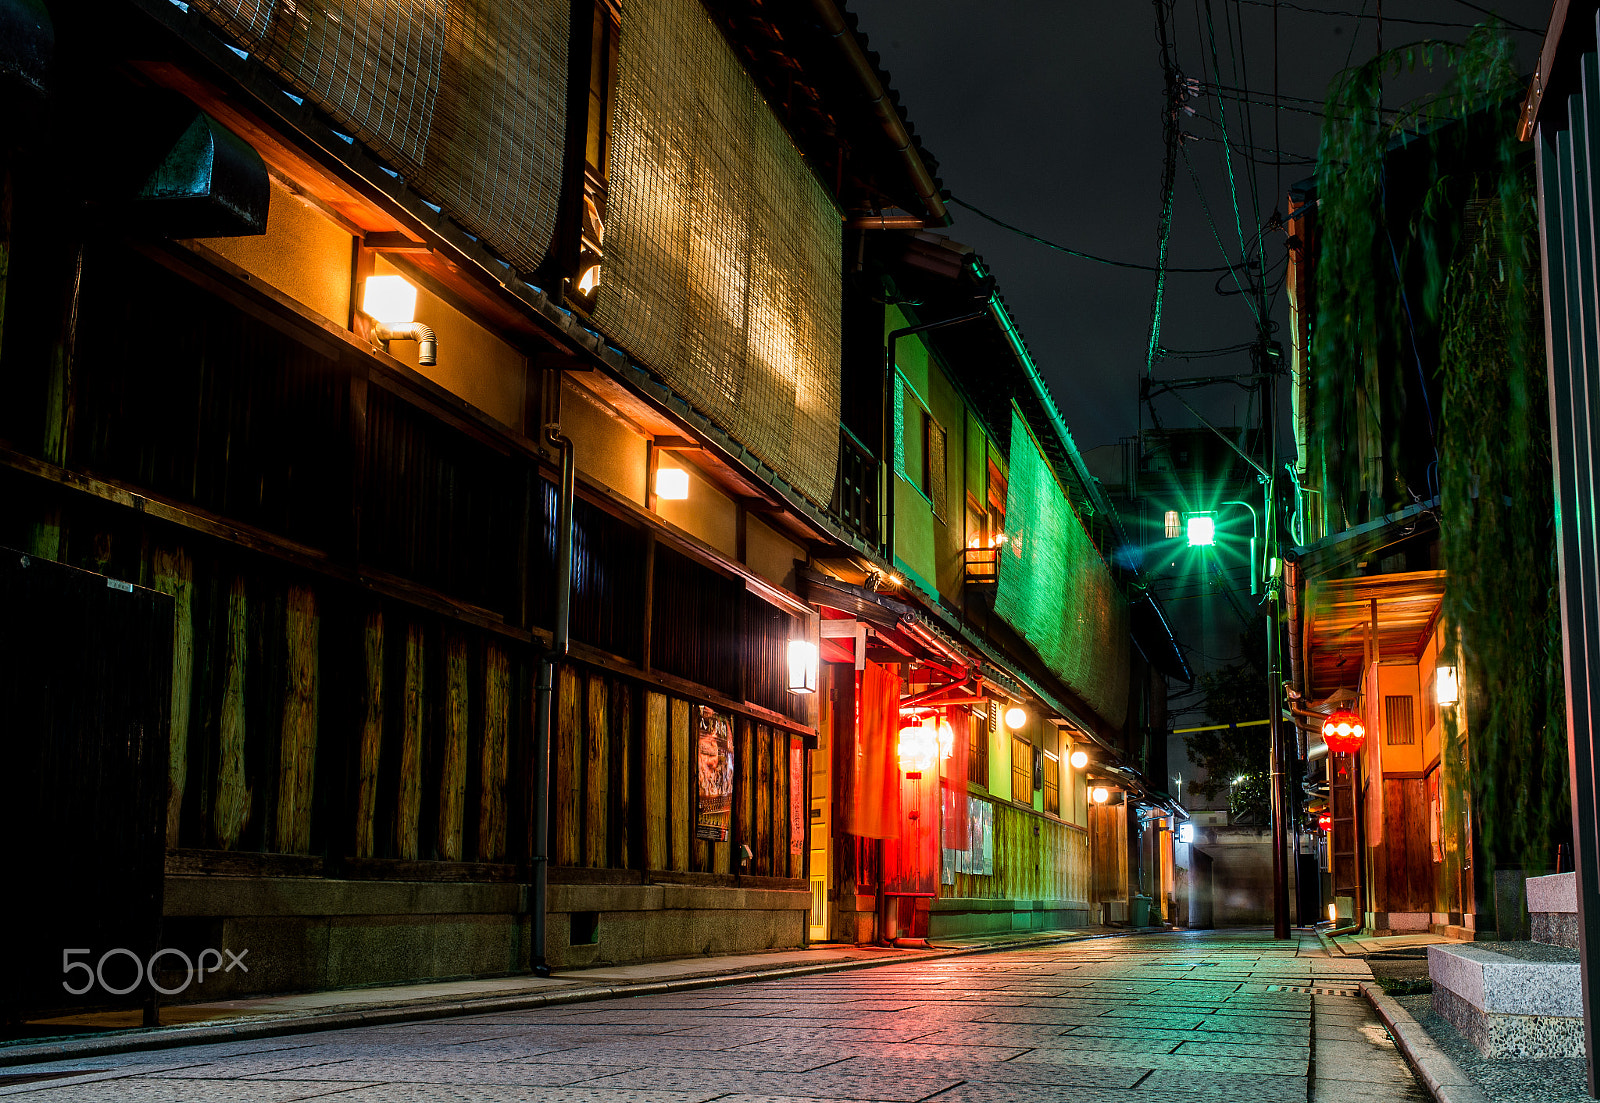 Nikon D610 + AF-S Nikkor 35mm f/1.8G sample photo. Gion night lights in kyoto, japan photography